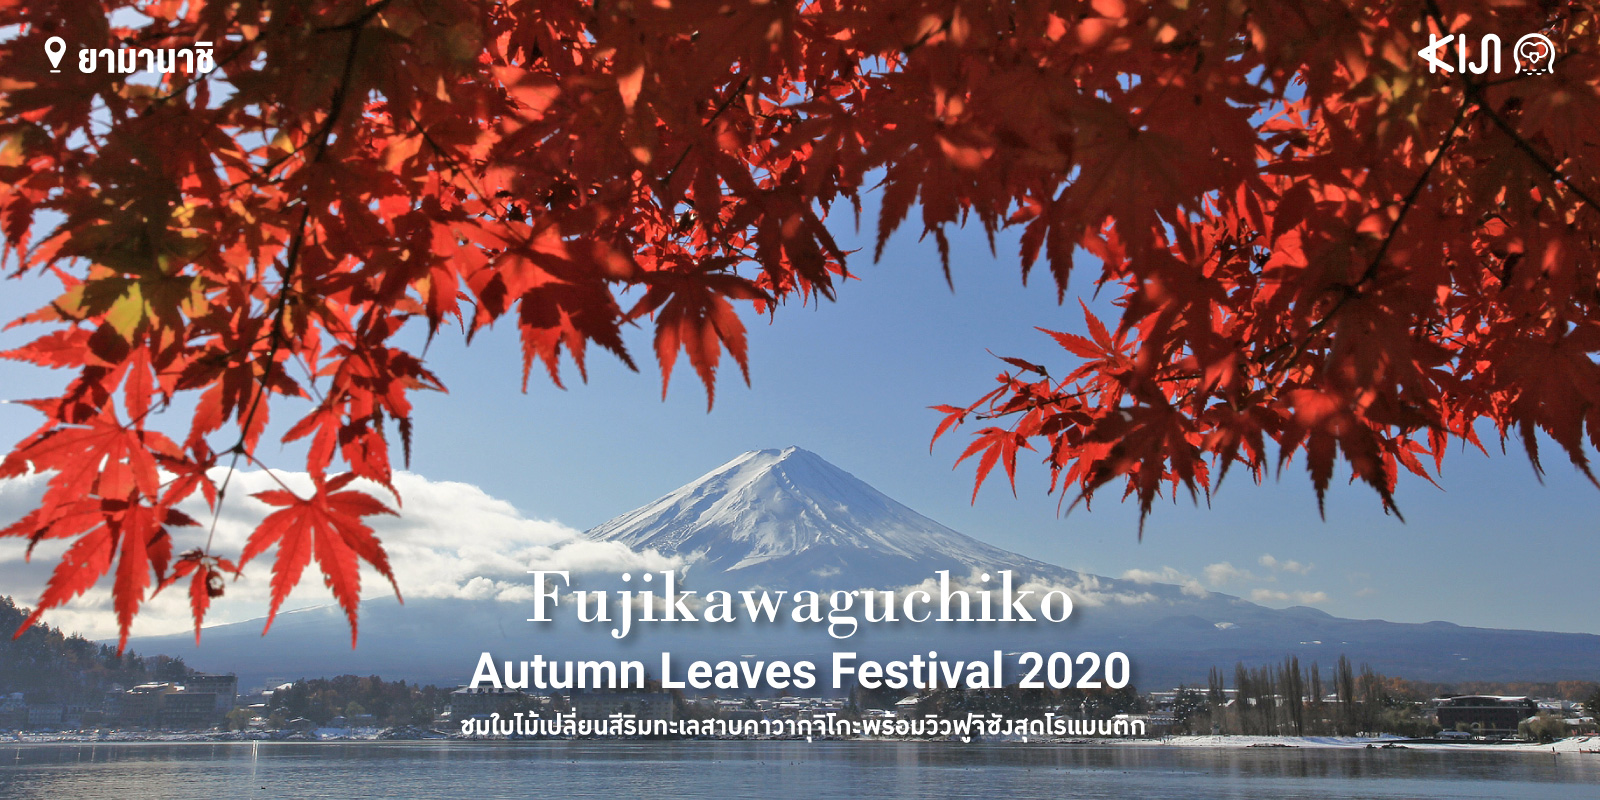 Fujikawaguchiko Autumn 2020 เทศกาลชมใบไม้เปลี่ยนสีที่ คาวากุจิโกะ